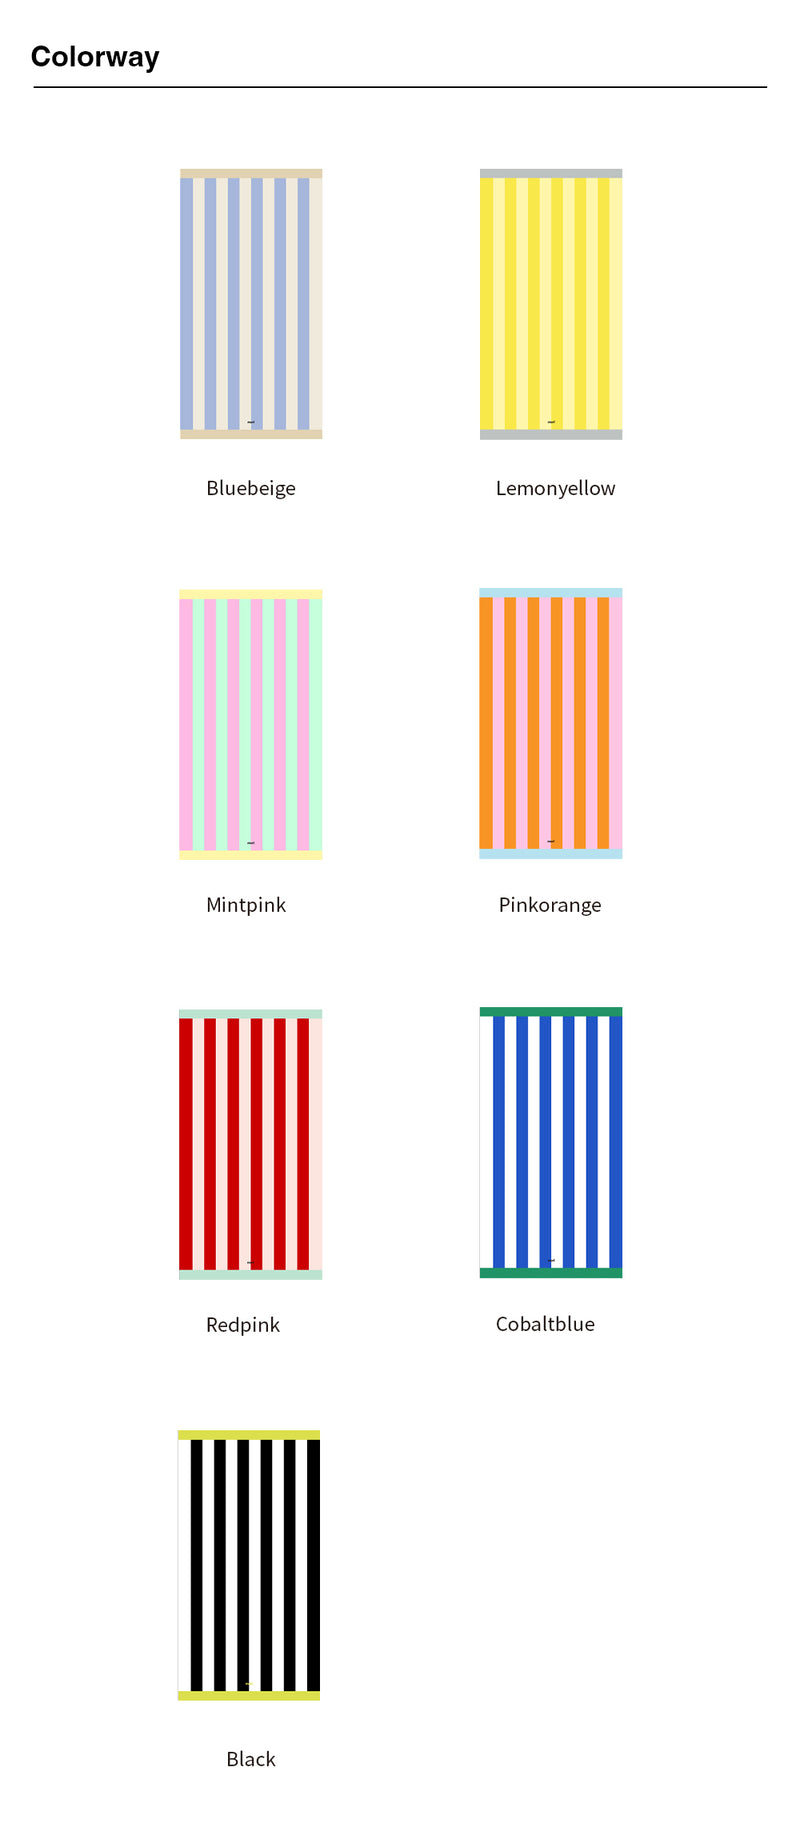 ストライプタオルビーチマット /  Stripe towel mat (7color)